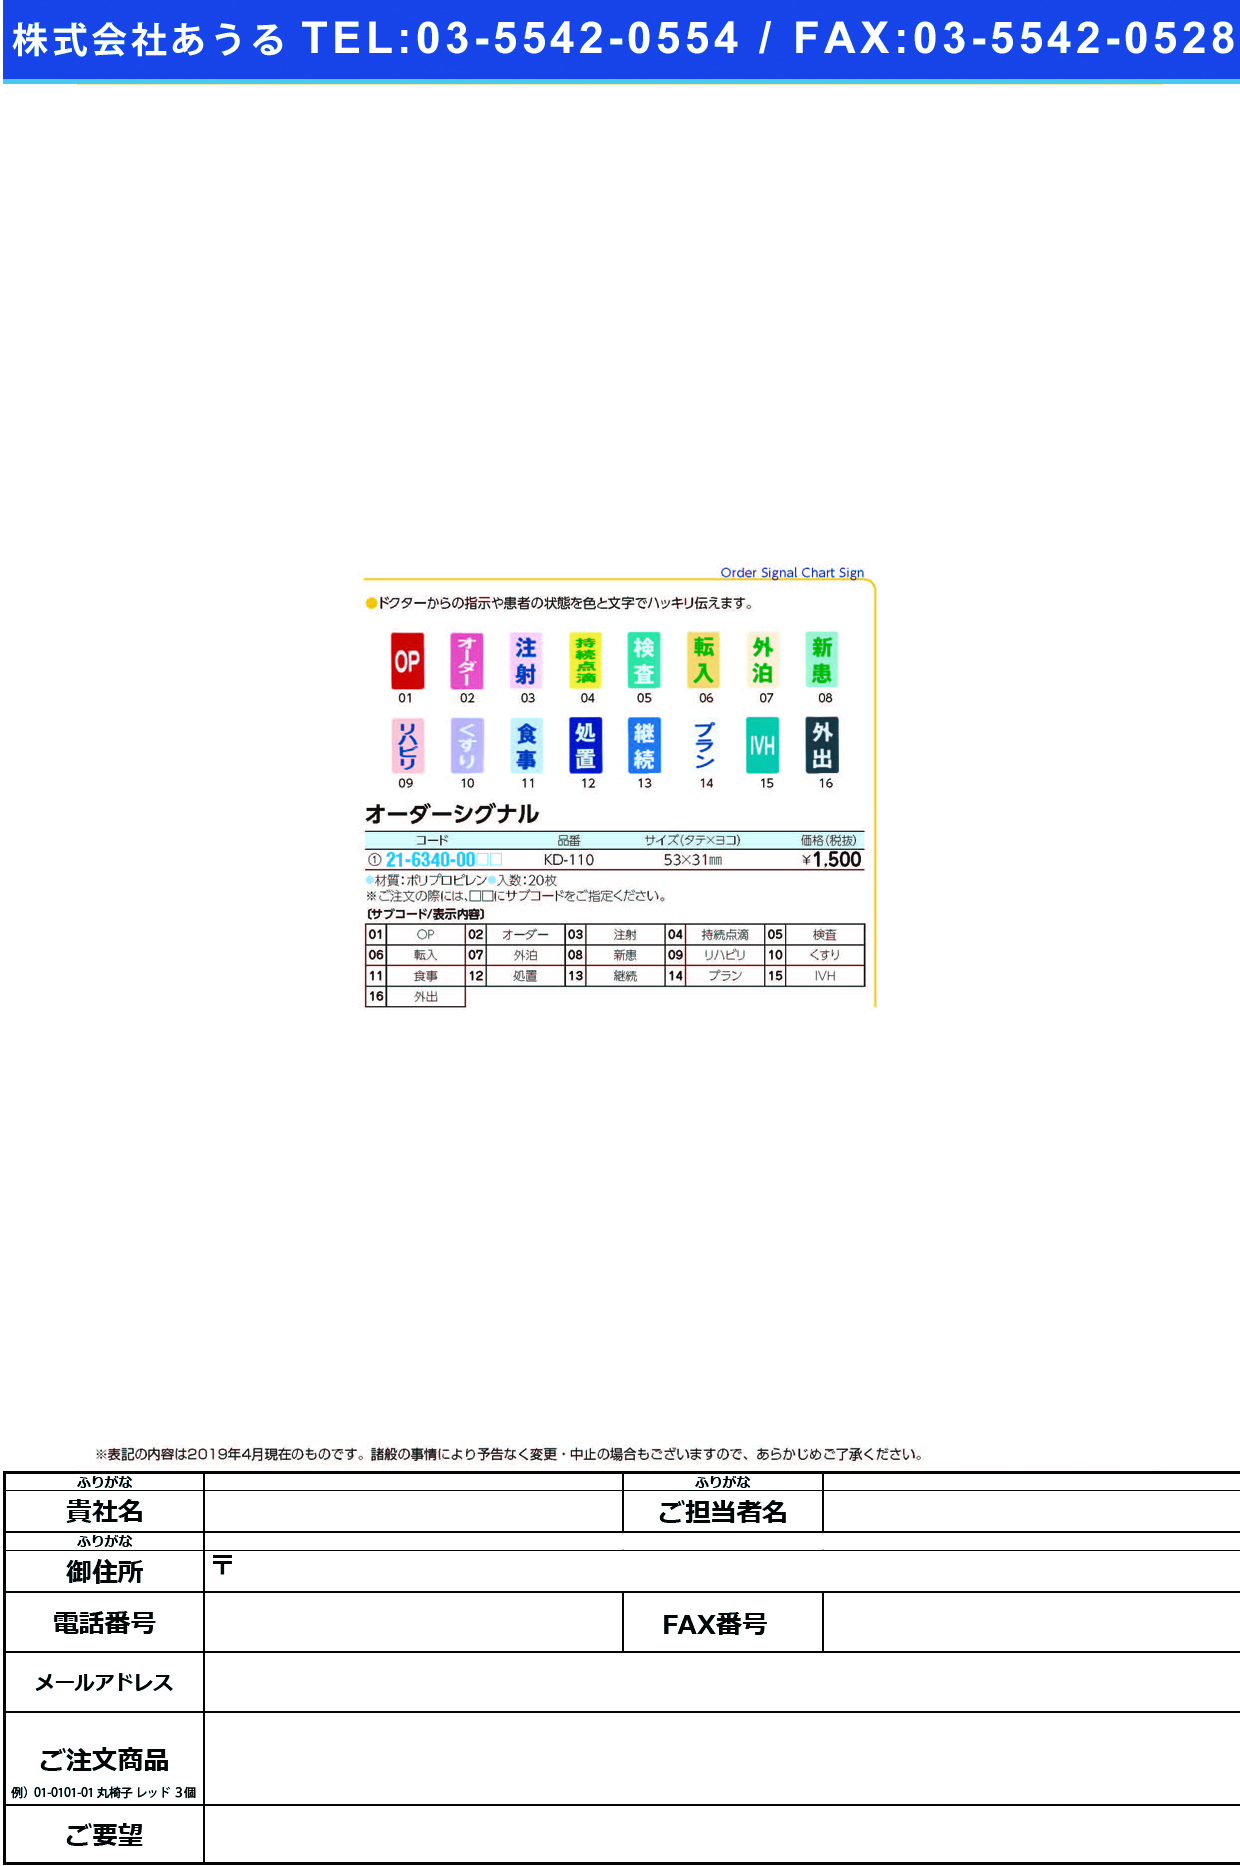 (21-6340-00)オーダーシグナル KD-110(20ﾏｲｲﾘ) ｵｰﾀﾞｰｼｸﾞﾅﾙ 注射(ケルン)【1袋単位】【2019年カタログ商品】